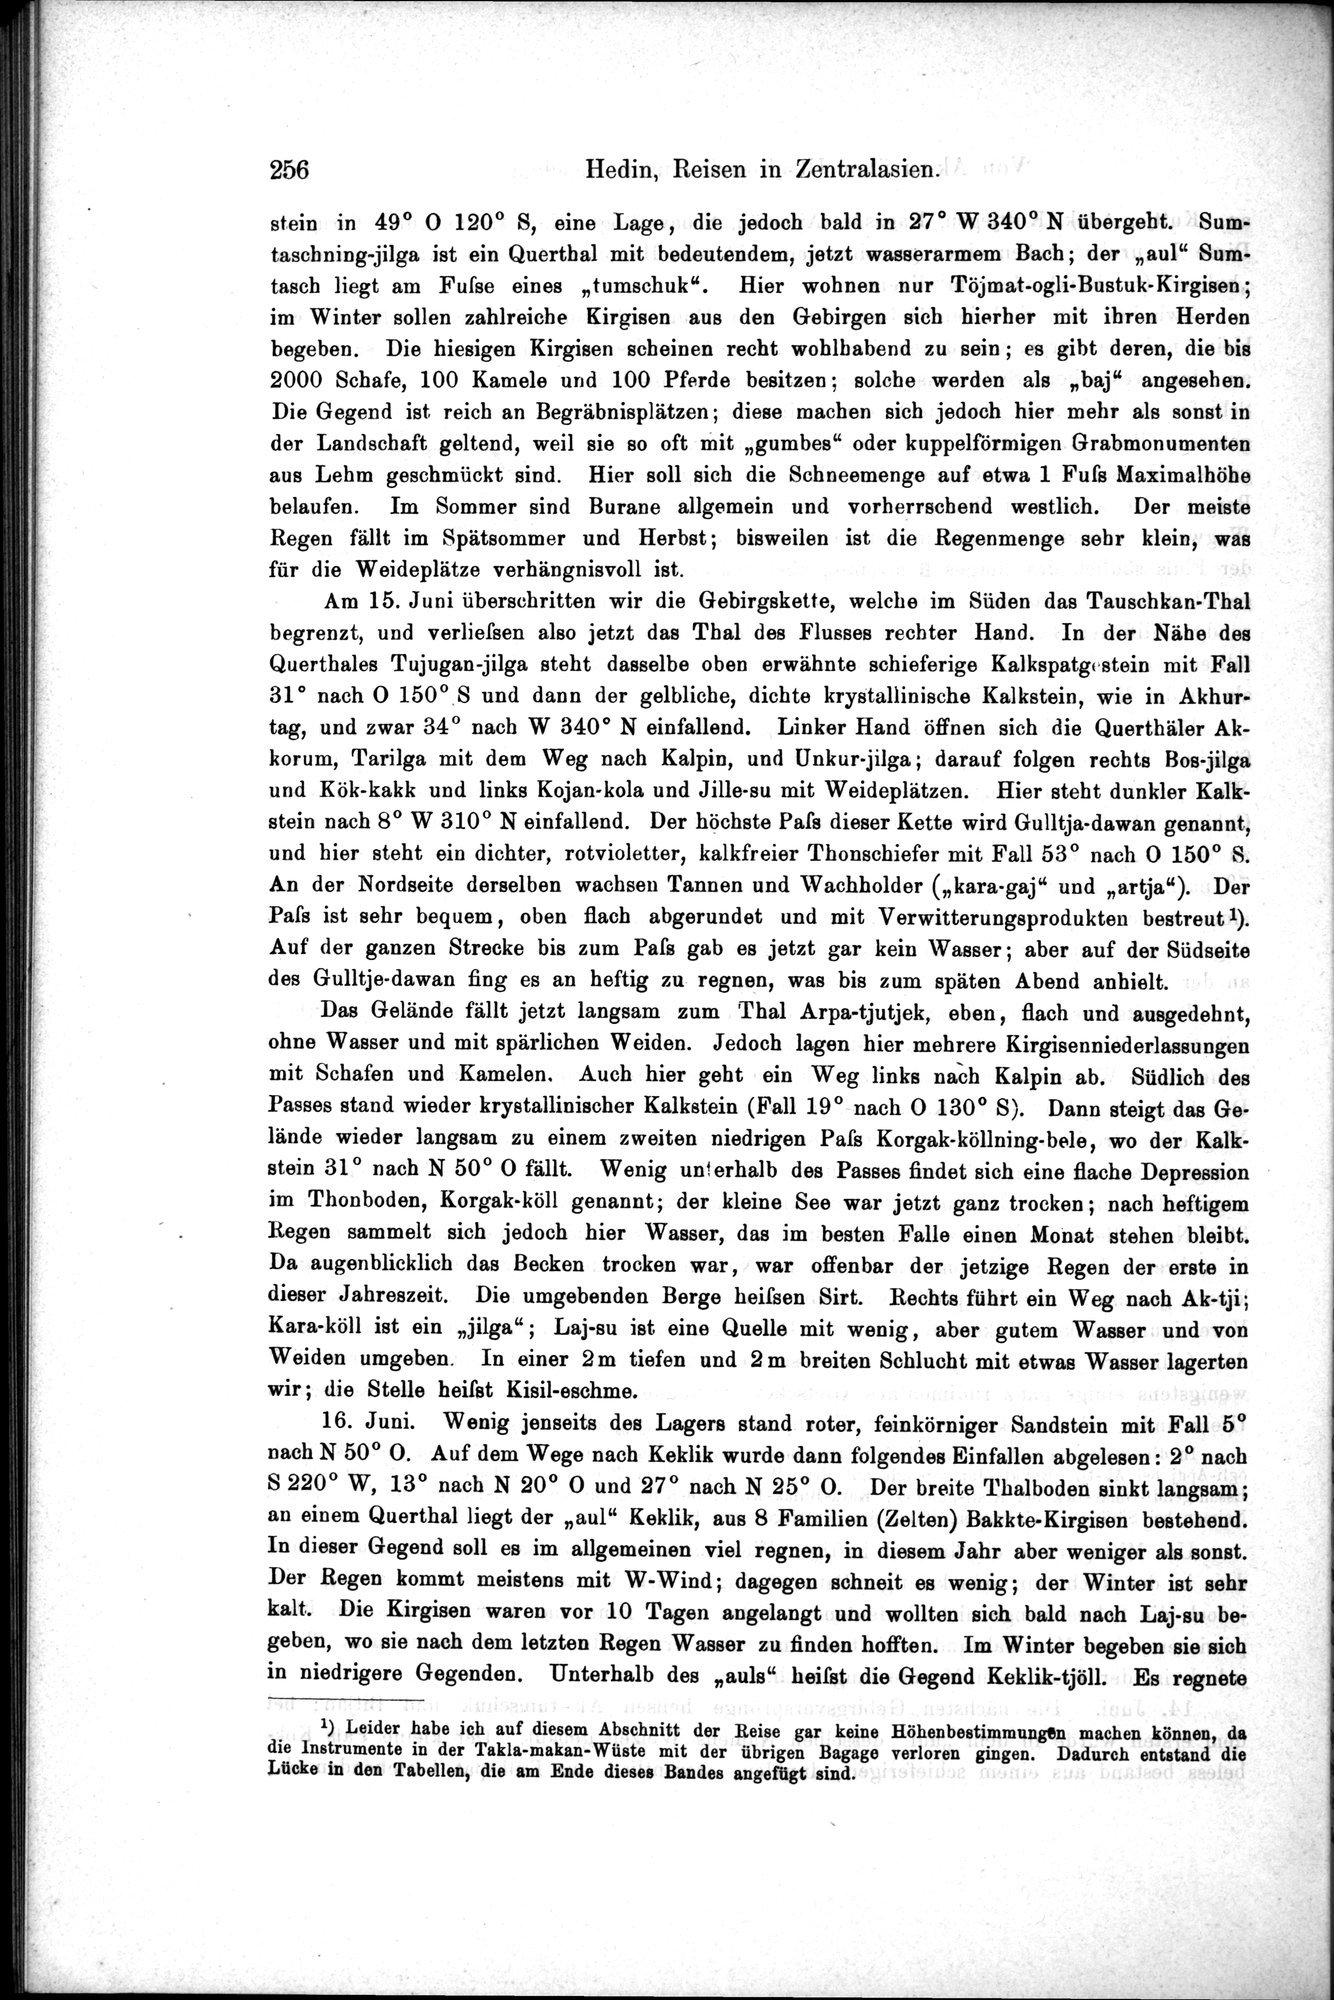 Die Geographische-Wissenschaftlichen Ergebnisse meiner Reisen in Zentralasien, 1894-1897 : vol.1 / Page 268 (Grayscale High Resolution Image)